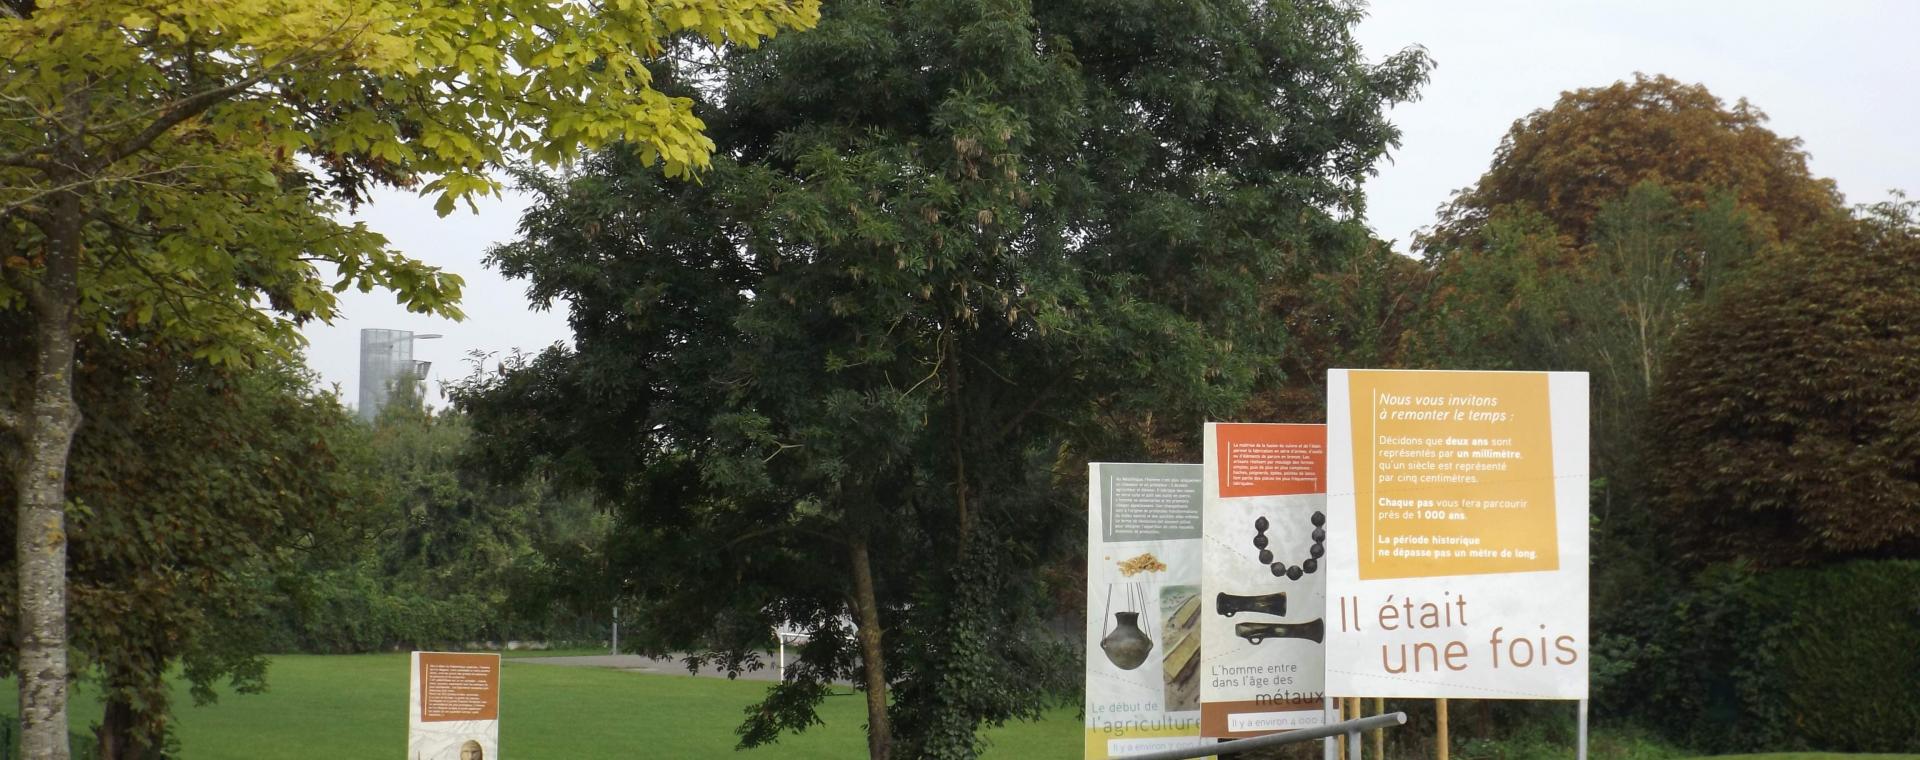 Photo de l'entrée du jardin archéologique de Saint-Acheul avec ses panneaux d'interprétation.